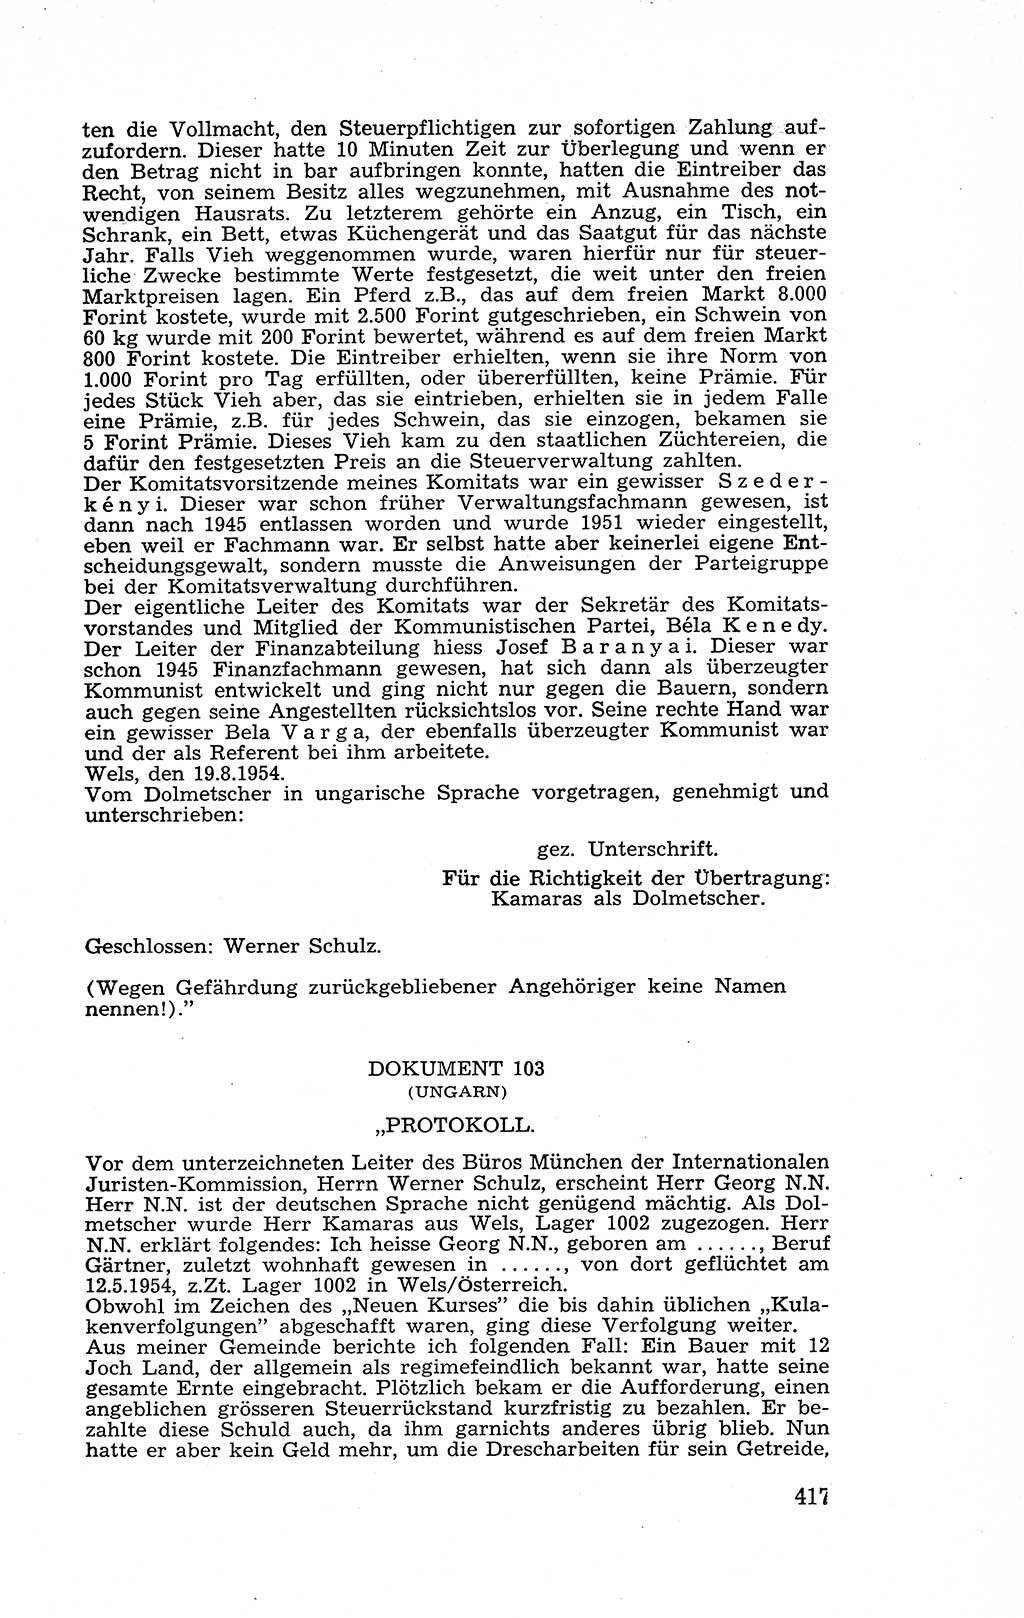 Recht in Fesseln, Dokumente, Internationale Juristen-Kommission [Bundesrepublik Deutschland (BRD)] 1955, Seite 417 (R. Dok. IJK BRD 1955, S. 417)